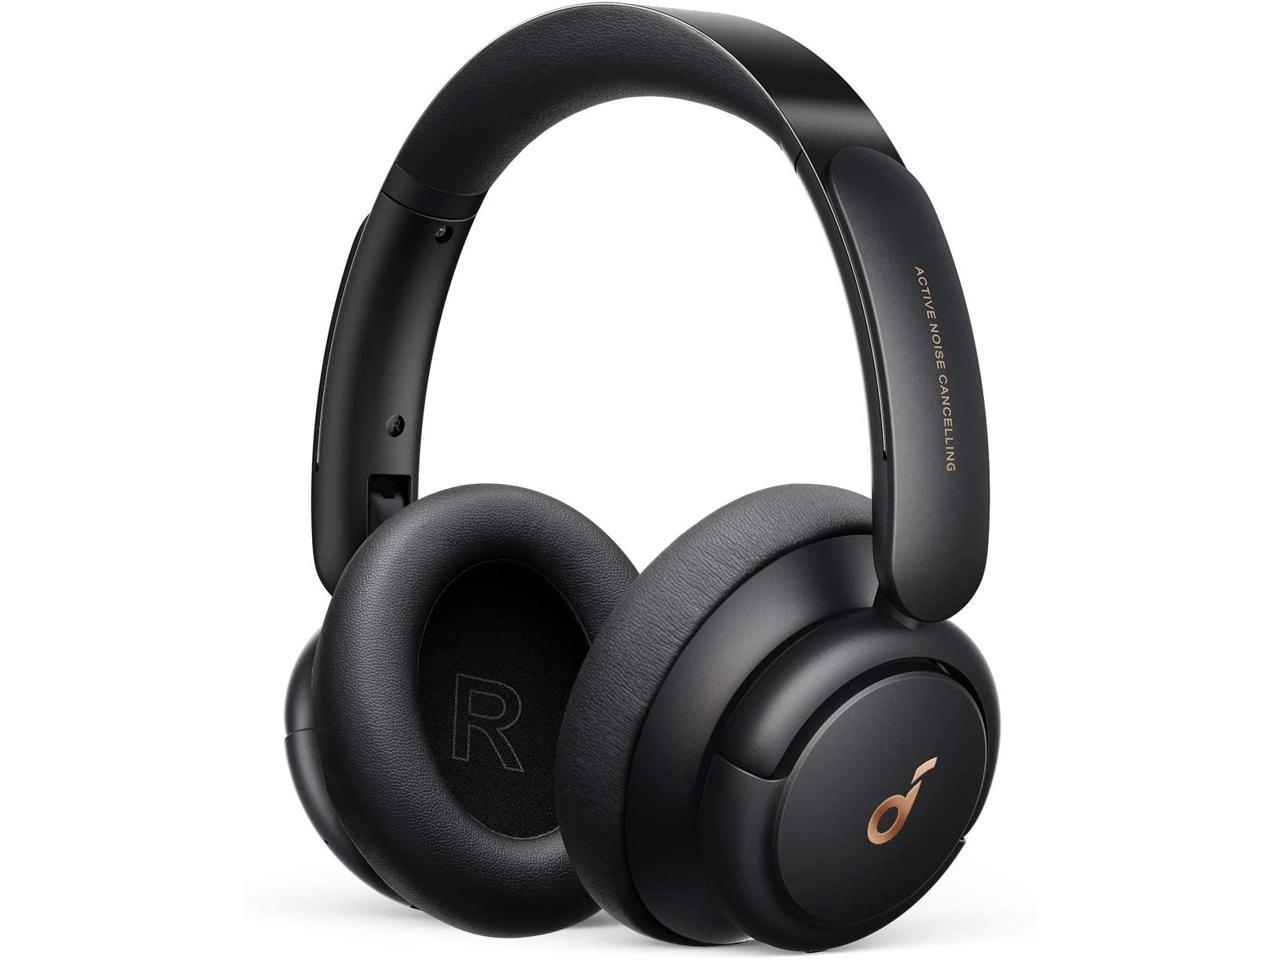 Anker Soundcore Life Q30 Hybrid ANC Wireless Over-Ear Headphones $56 at Newegg